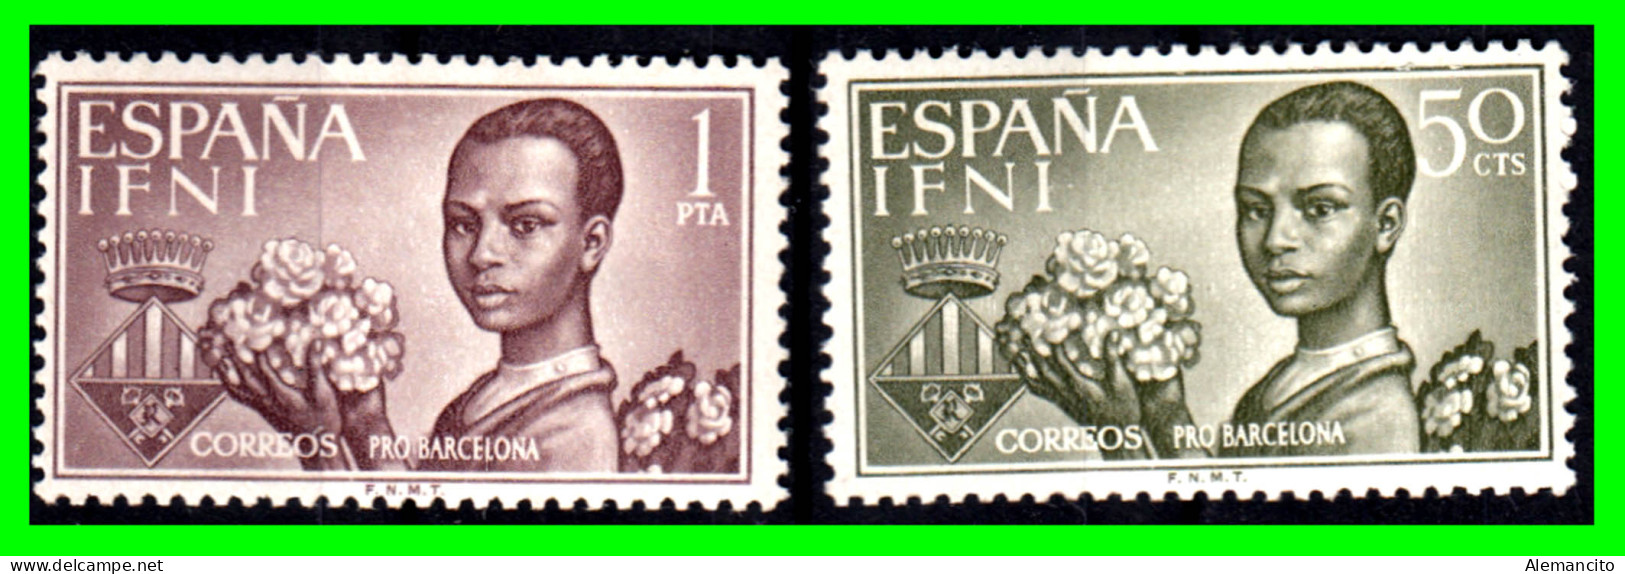 ESPAÑA COLONIAS ESPAÑOLAS ( IFNI ESPAÑOL AFRICA ) SERIE DE SELLOS DEL AÑO 1963 AYUDA A BARCELONA  - NUEVOS - - Ifni